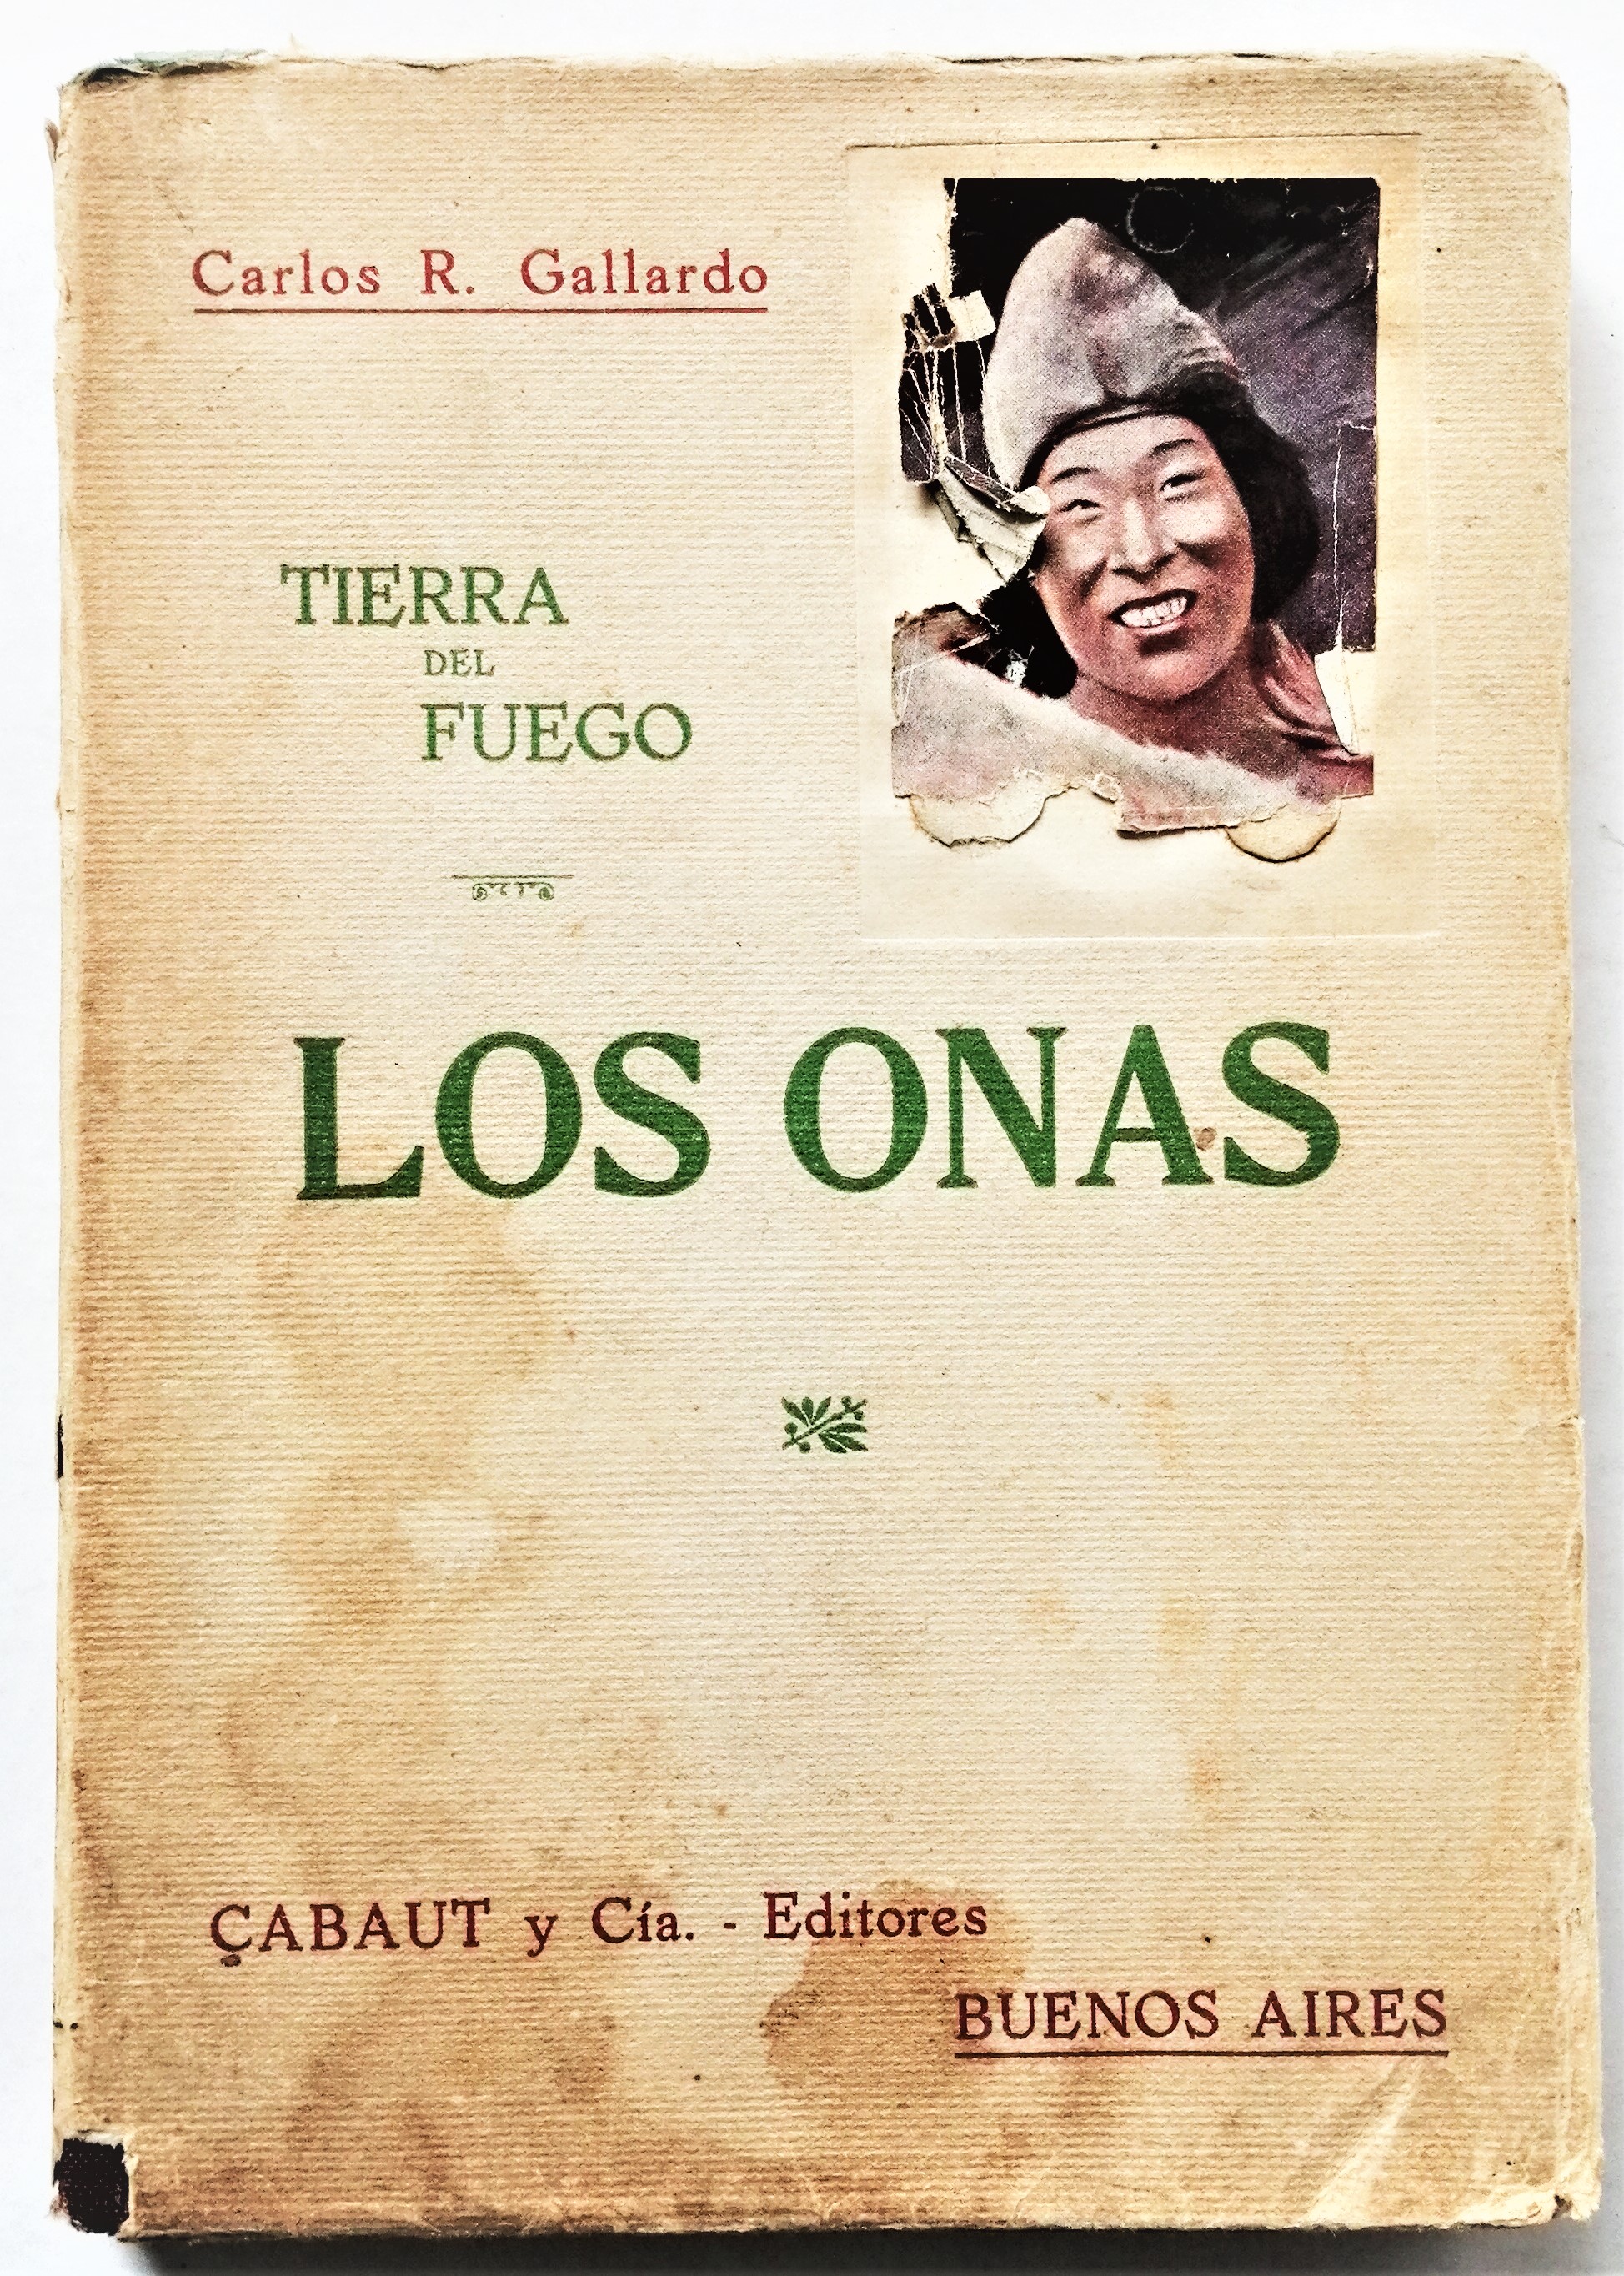 Carlos R. Gallardo - Los onas. Tierra del fuego